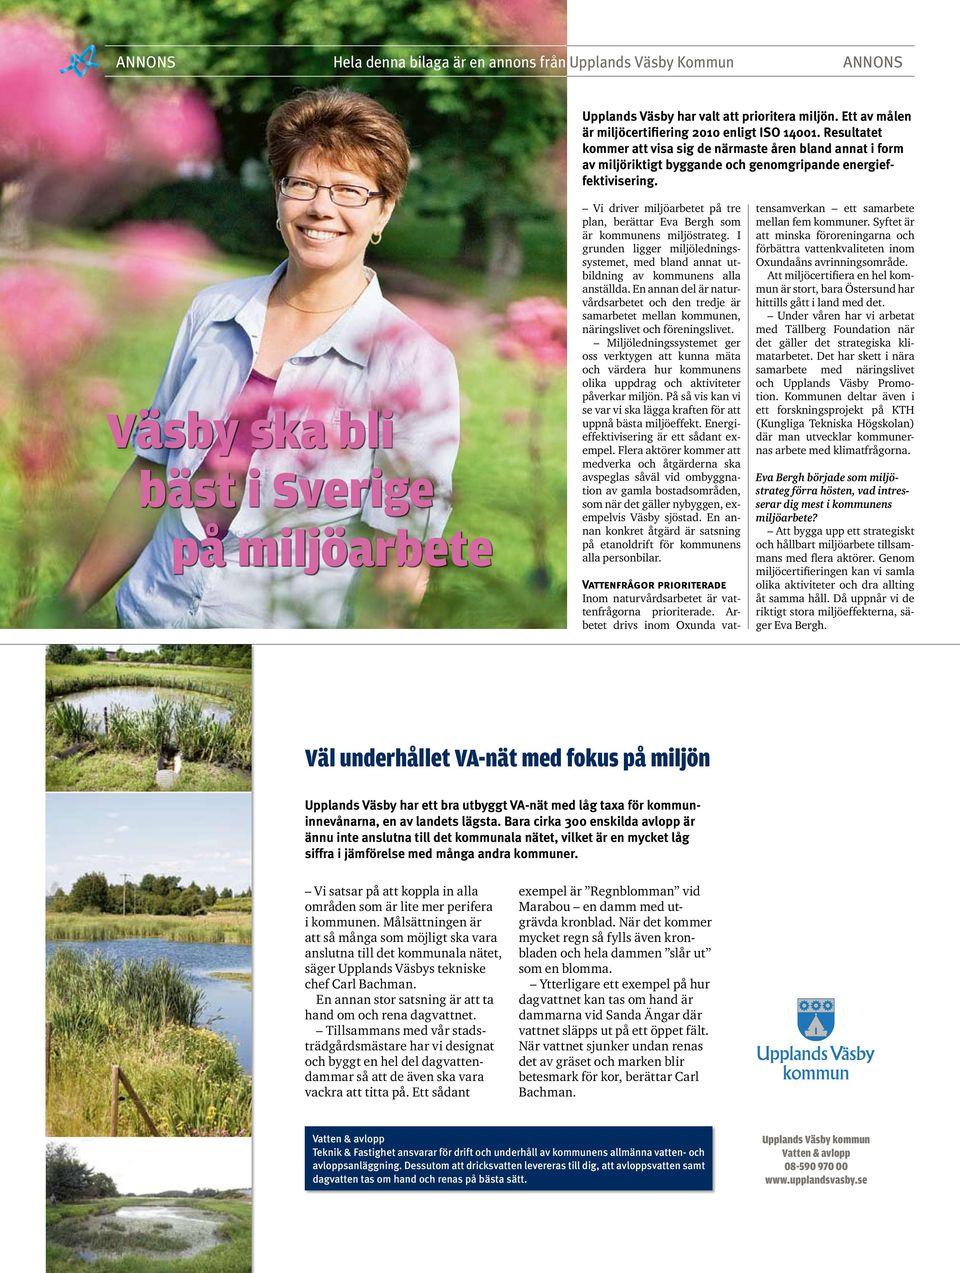 Väsby ska bli bäst i Sverige på miljöarbete Vi driver miljöarbetet på tre plan, berättar Eva Bergh som är kommunens miljöstrateg.